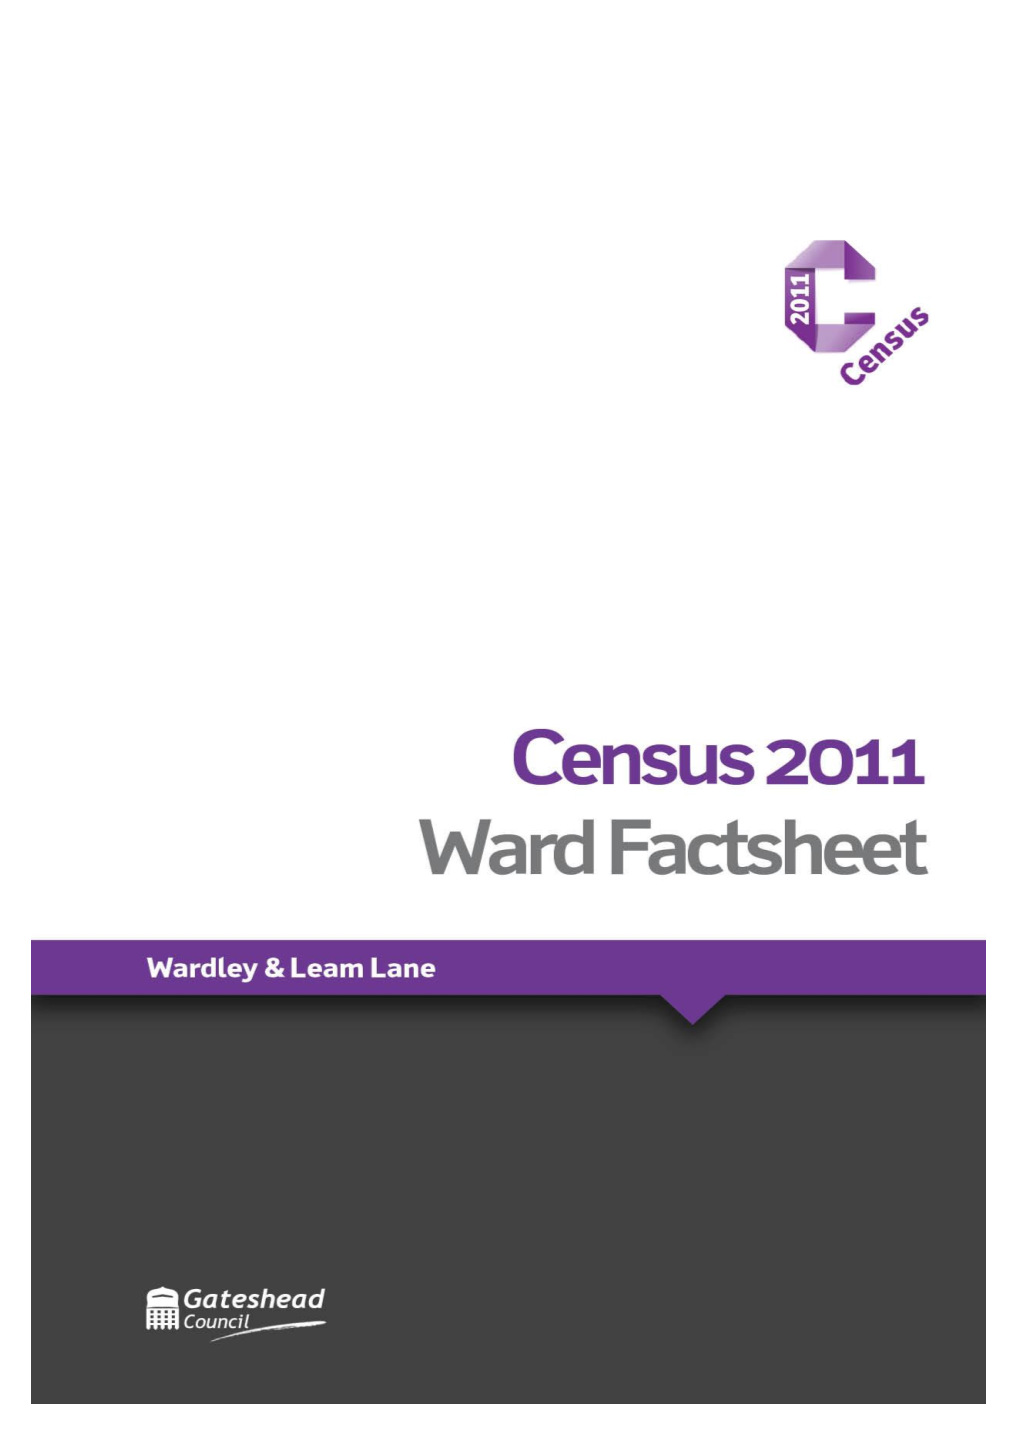 Census 2011 Ward Factsheet: Wardley & Leam Lane